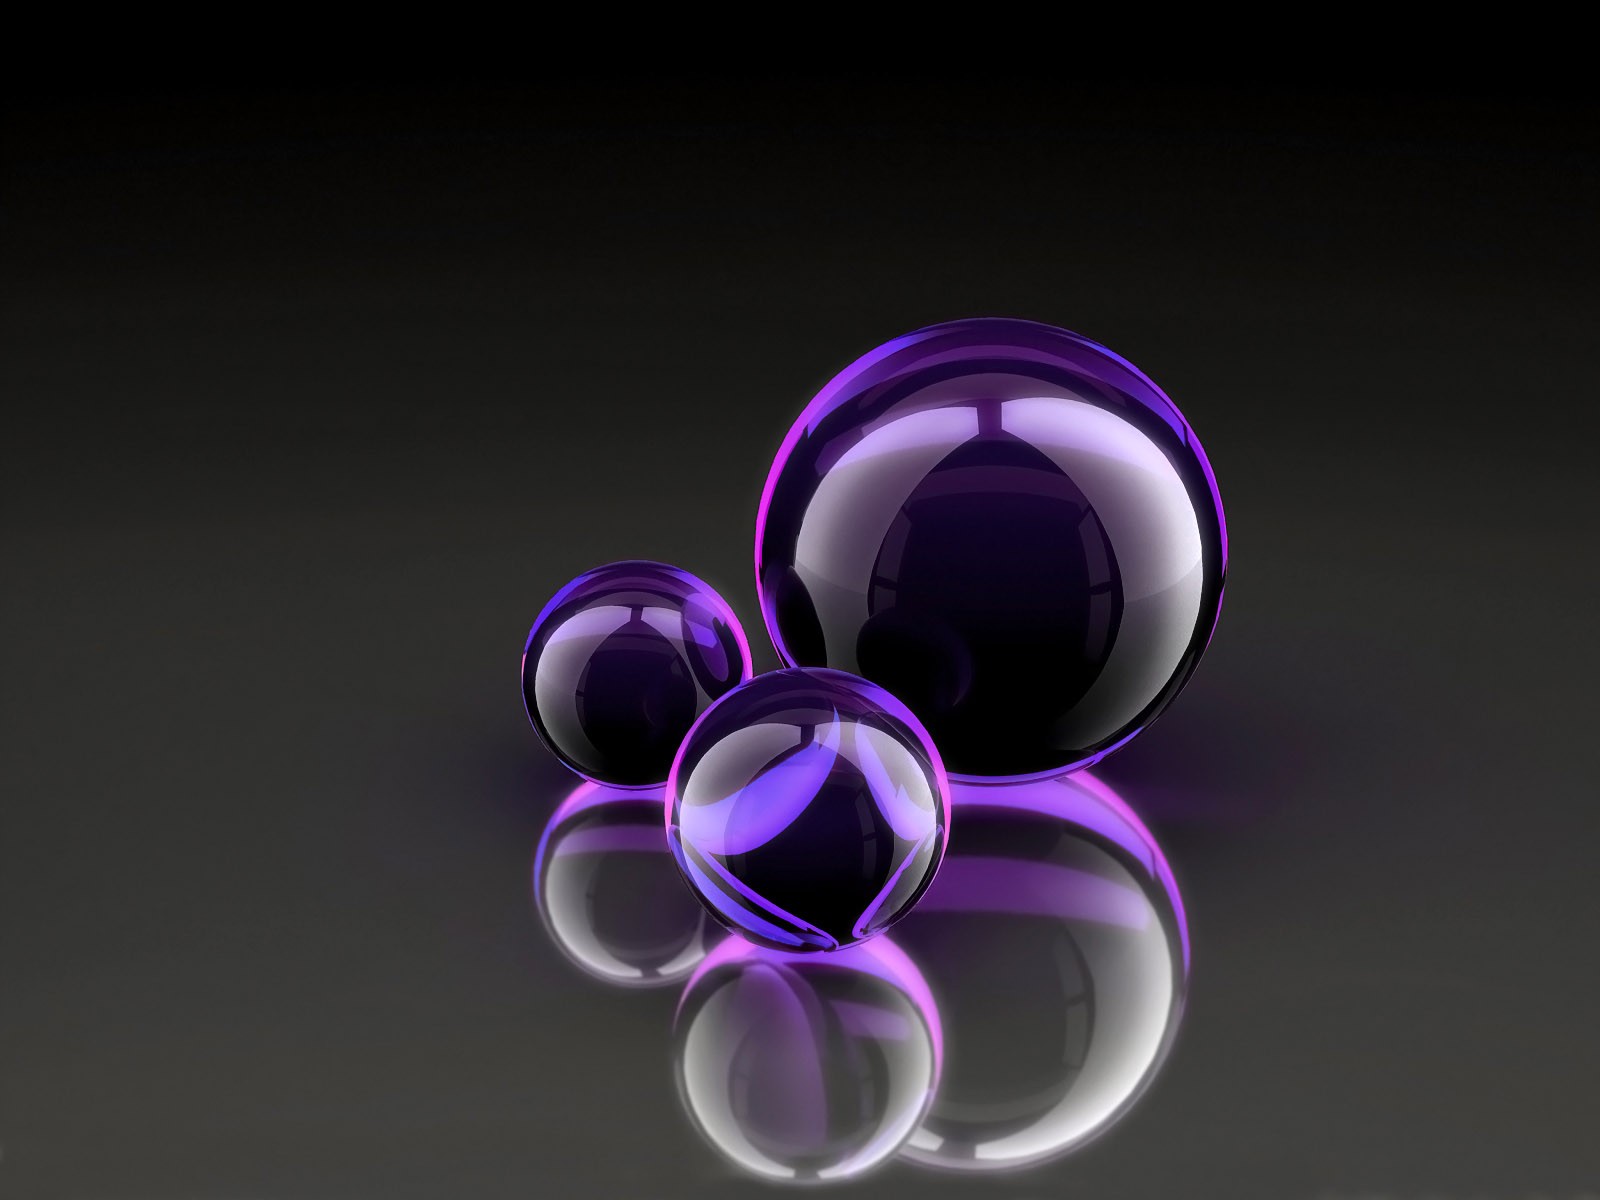 purple balls reflection of glass